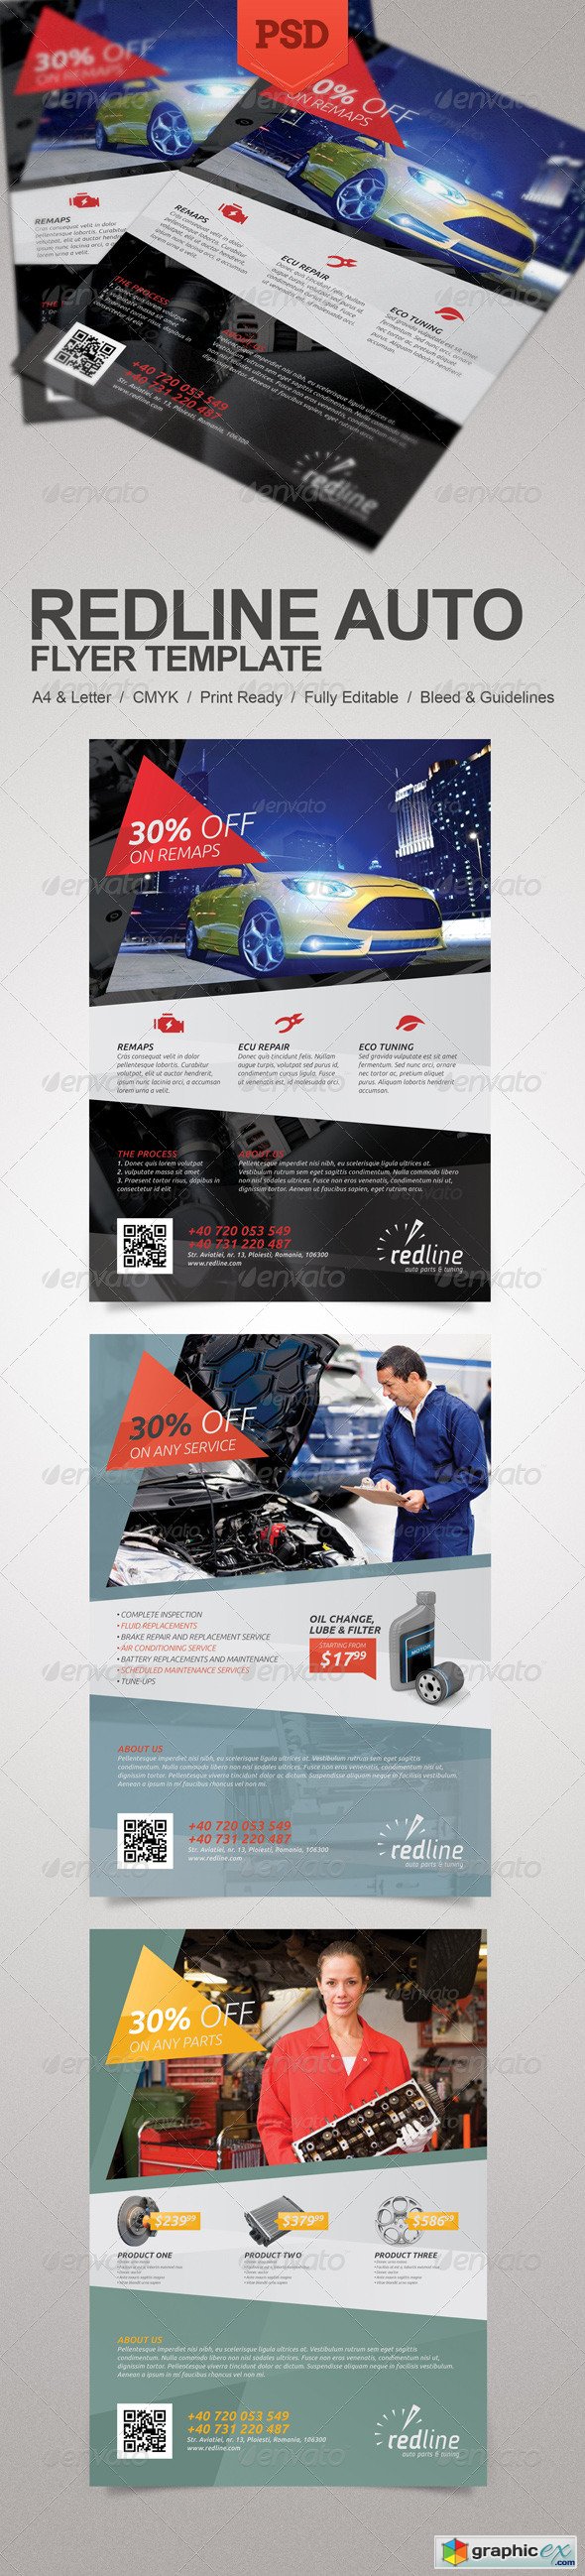 Redline Auto Flyer